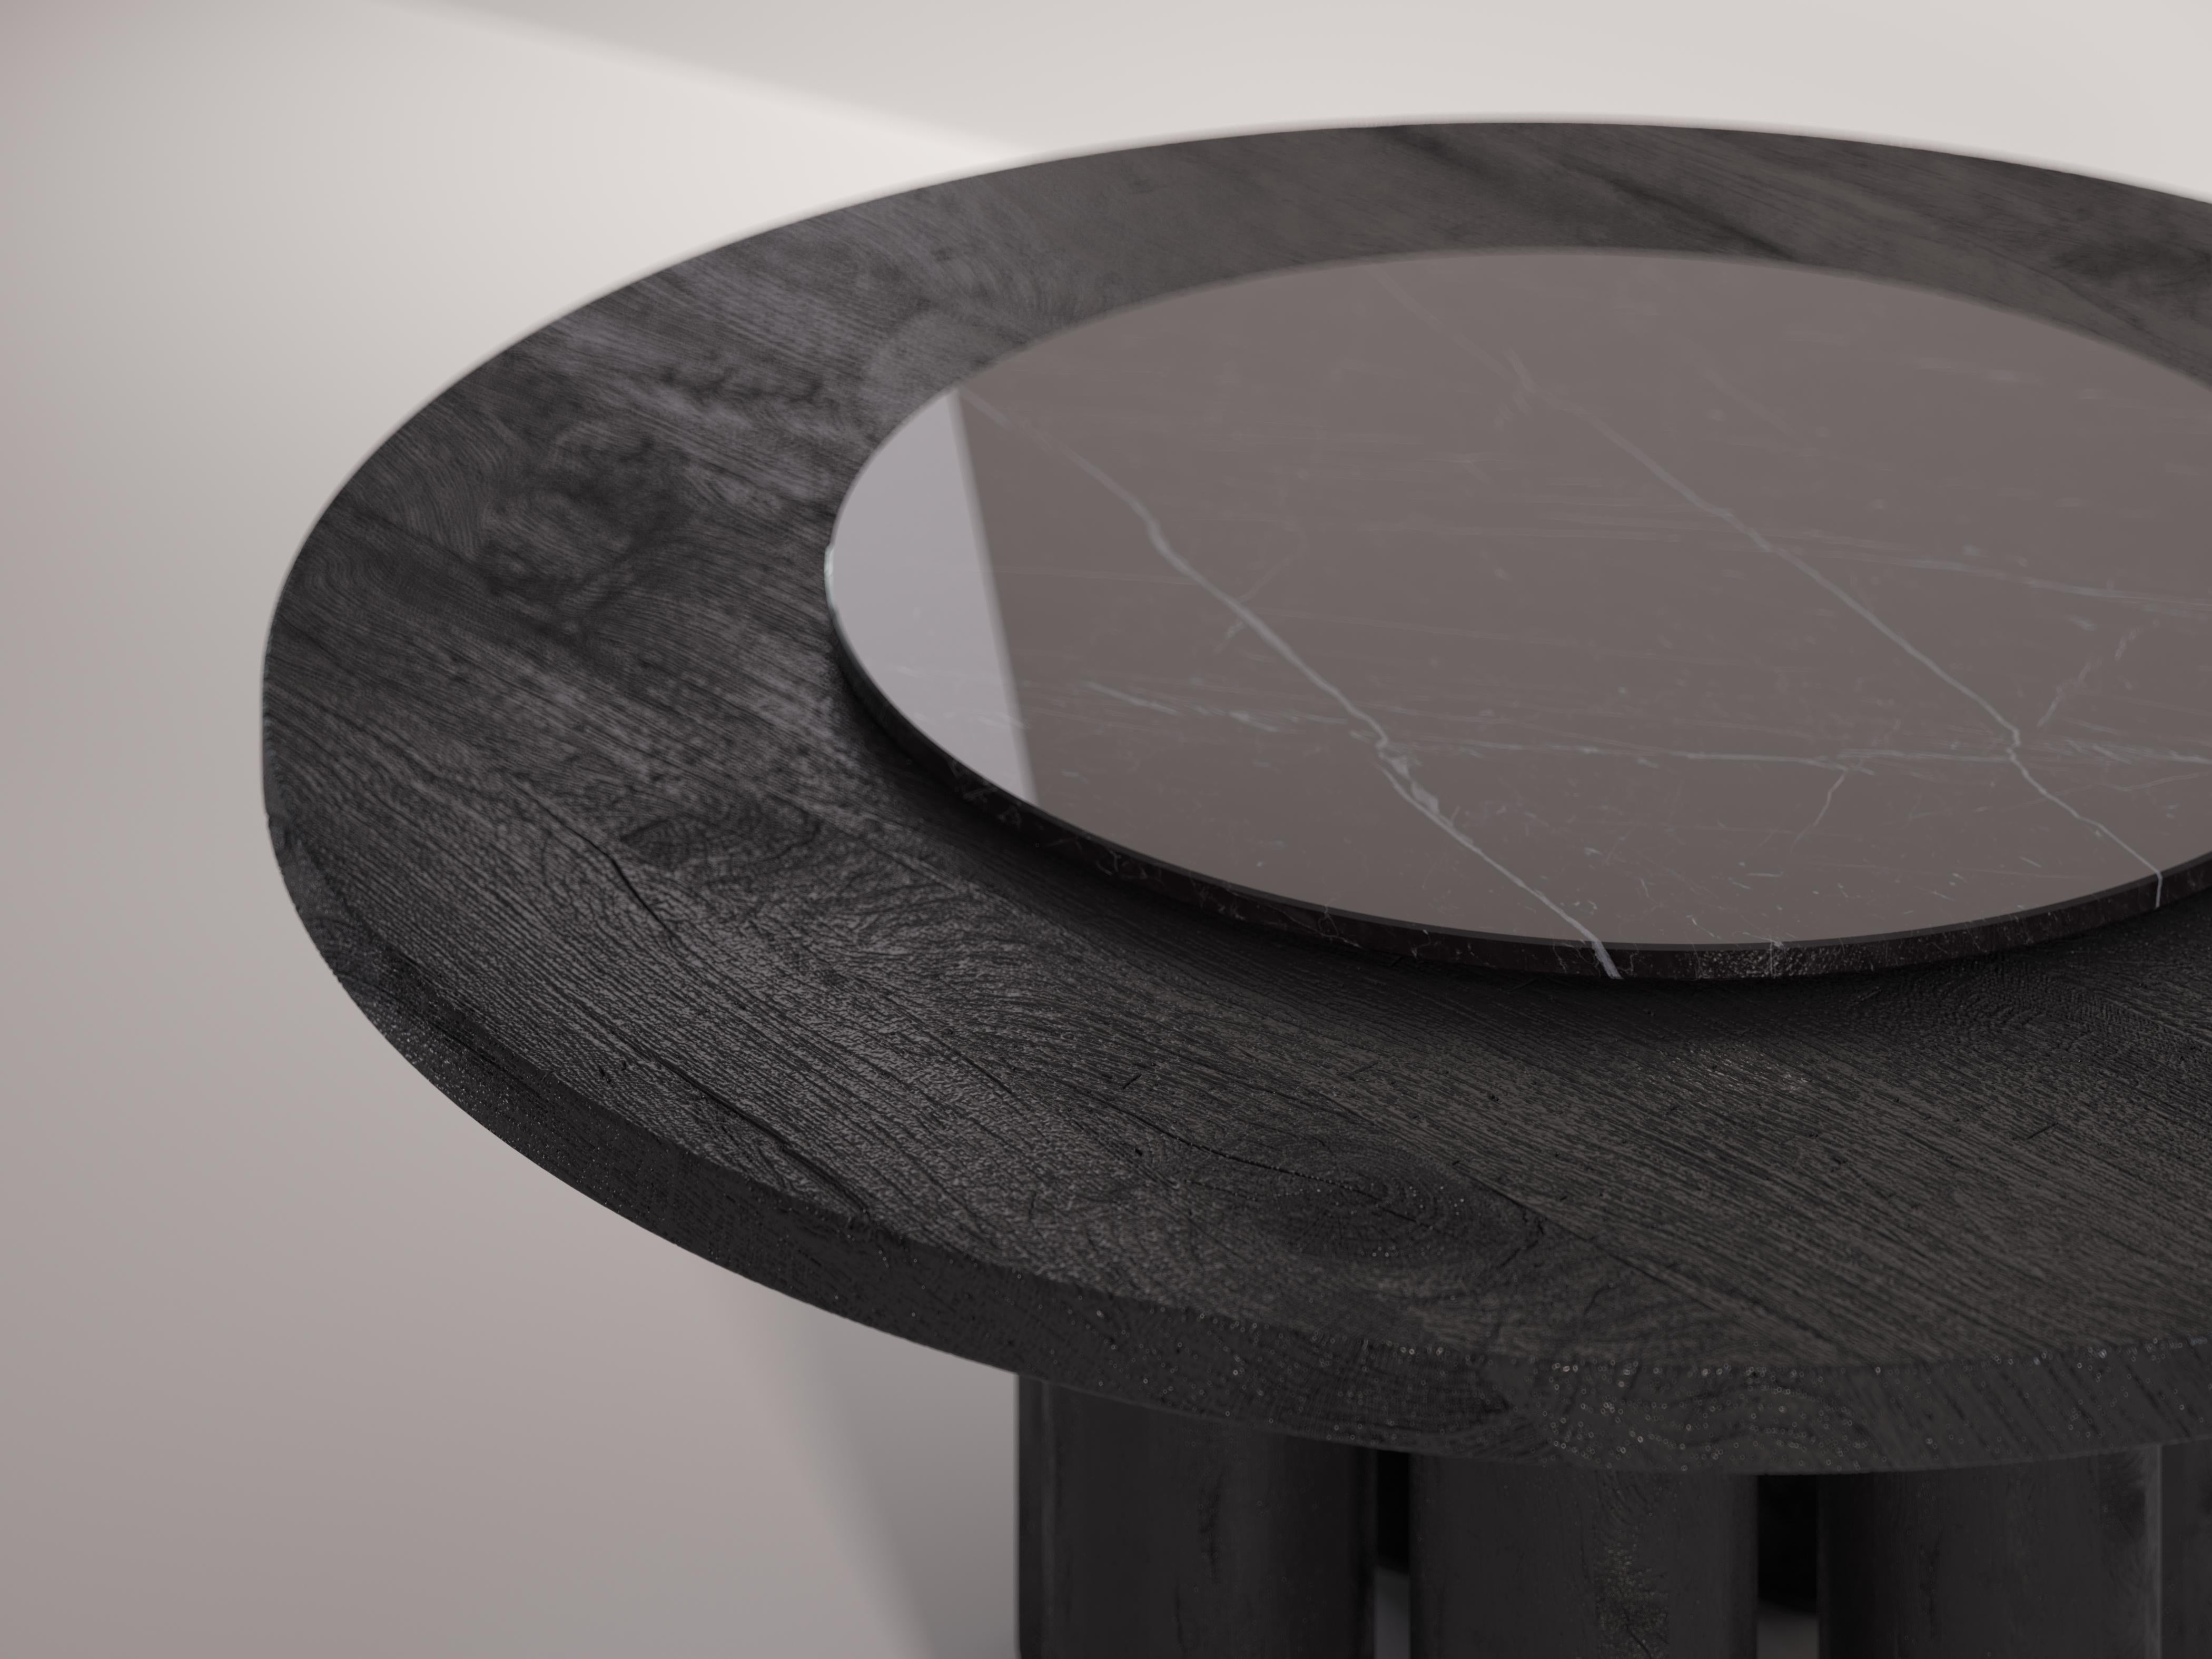 Mammoth est une luxueuse table à manger circulaire entièrement fabriquée à la main en Italie avec du bois massif récupéré. La pièce une fois assemblée est brûlée et finie à la main pour la rendre durable dans le temps. 
Un plateau tournant est